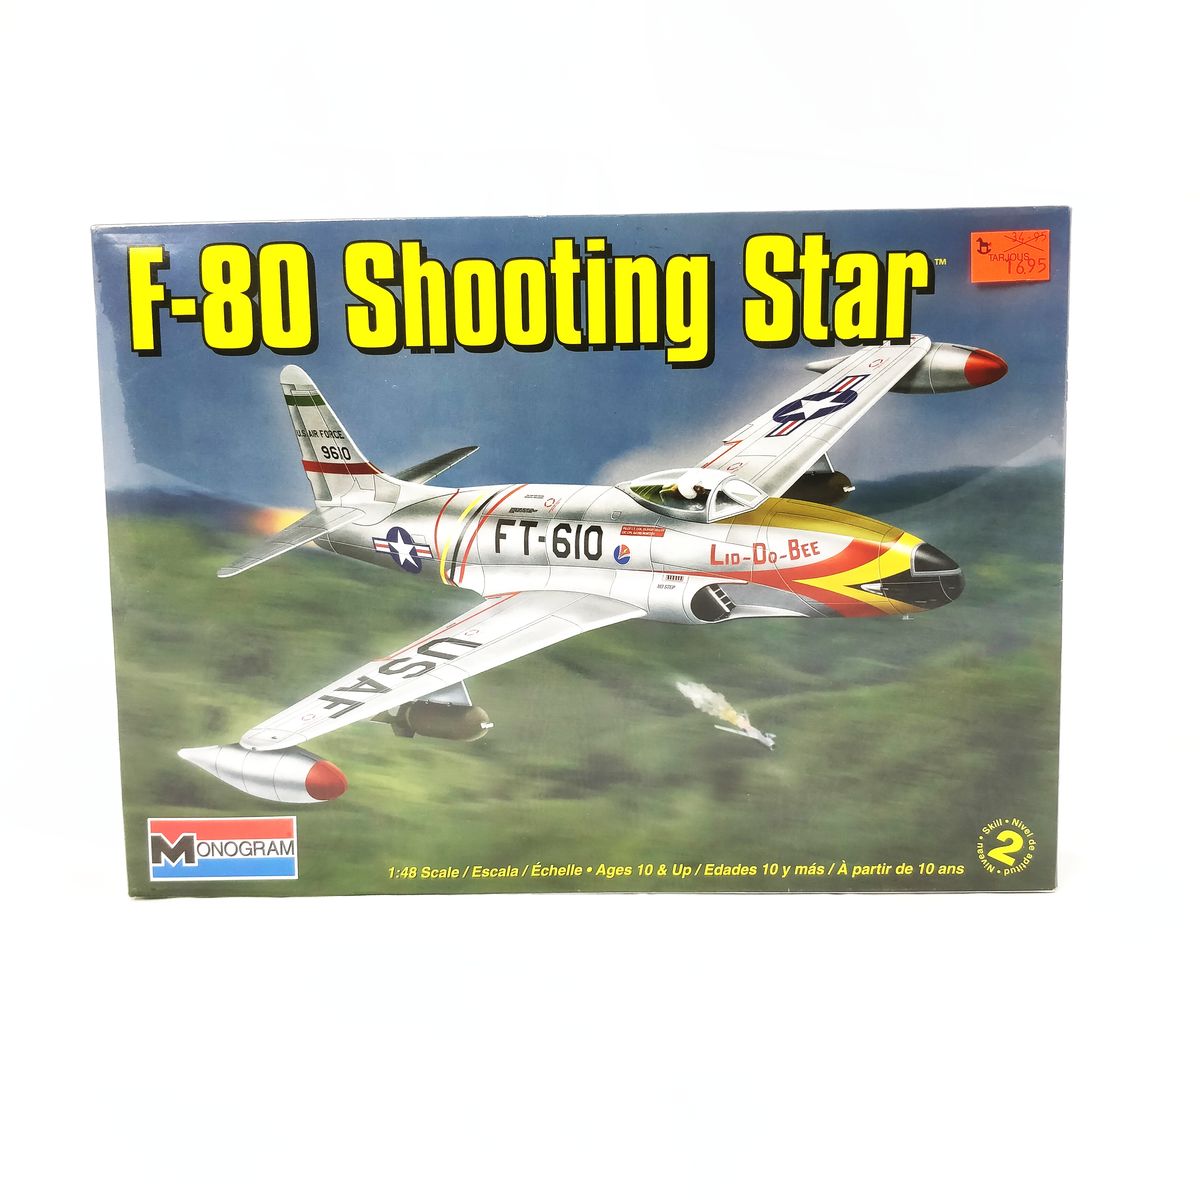 Monogram F-80 shooting star kone 1:48